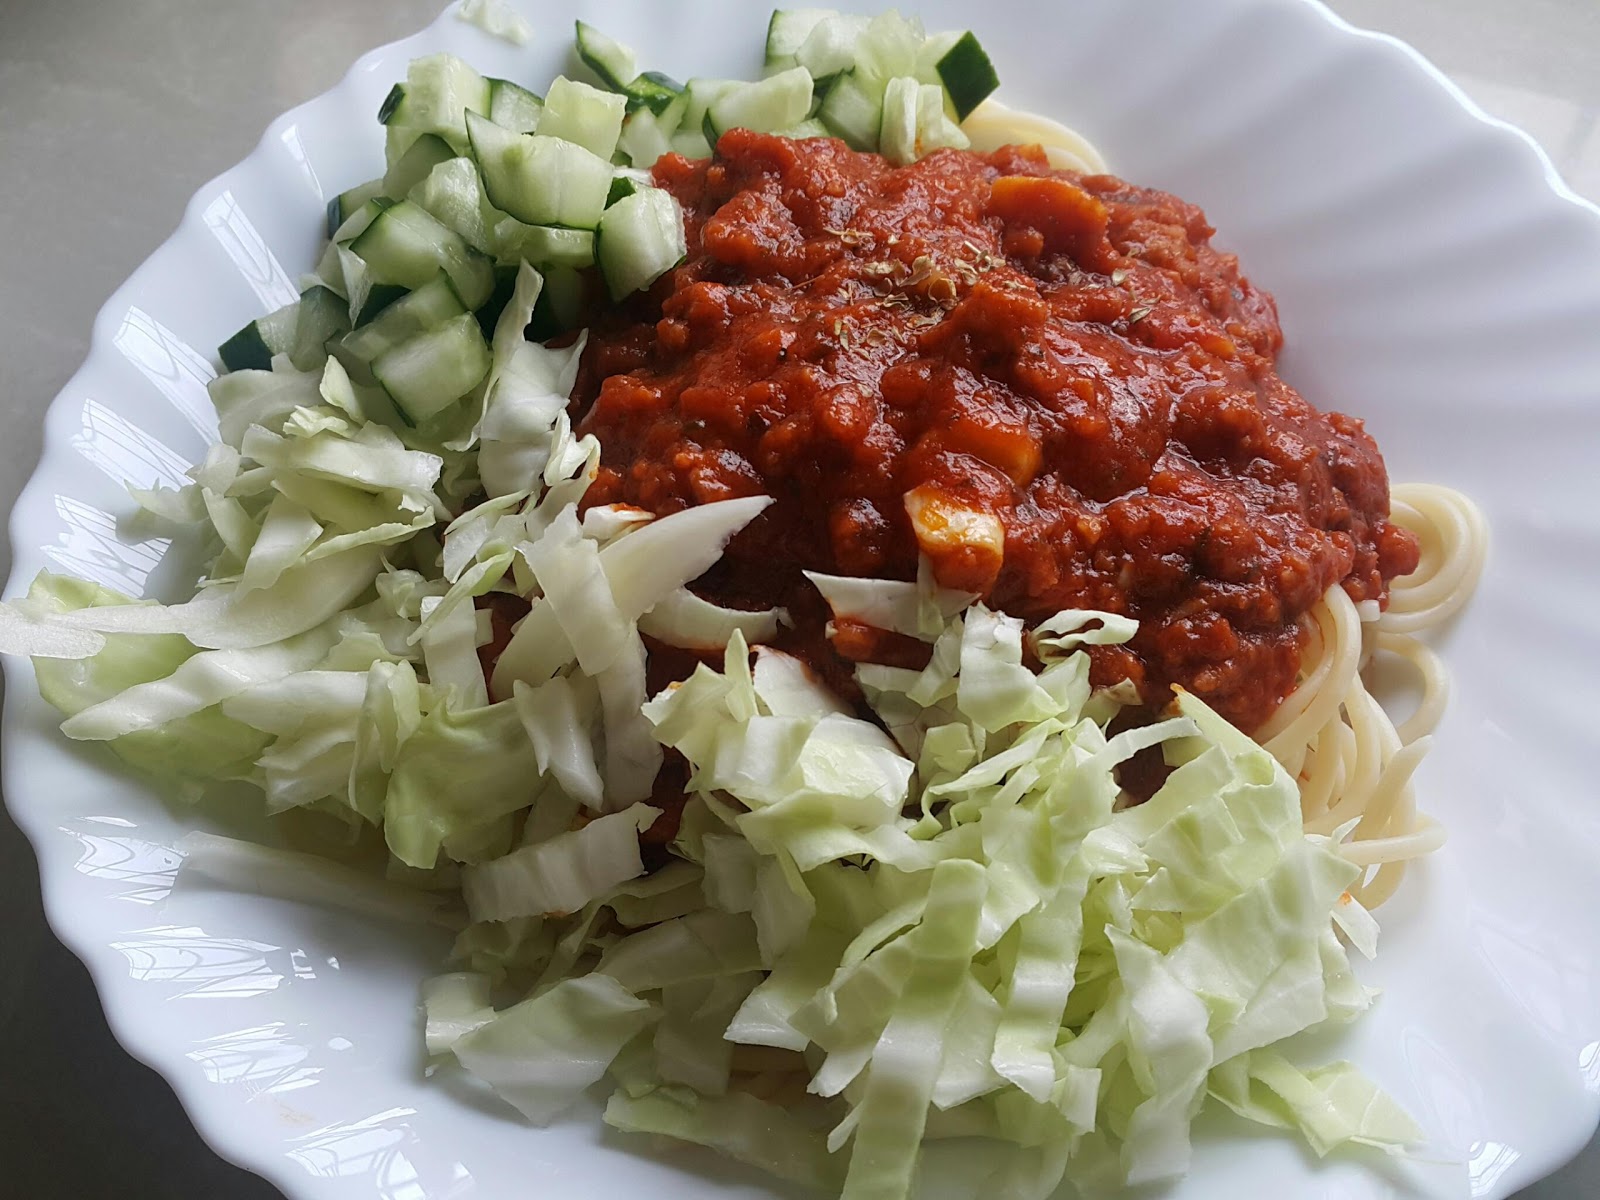 Cerita Yna: Resepi Spaghetti Sihat dan Mudah